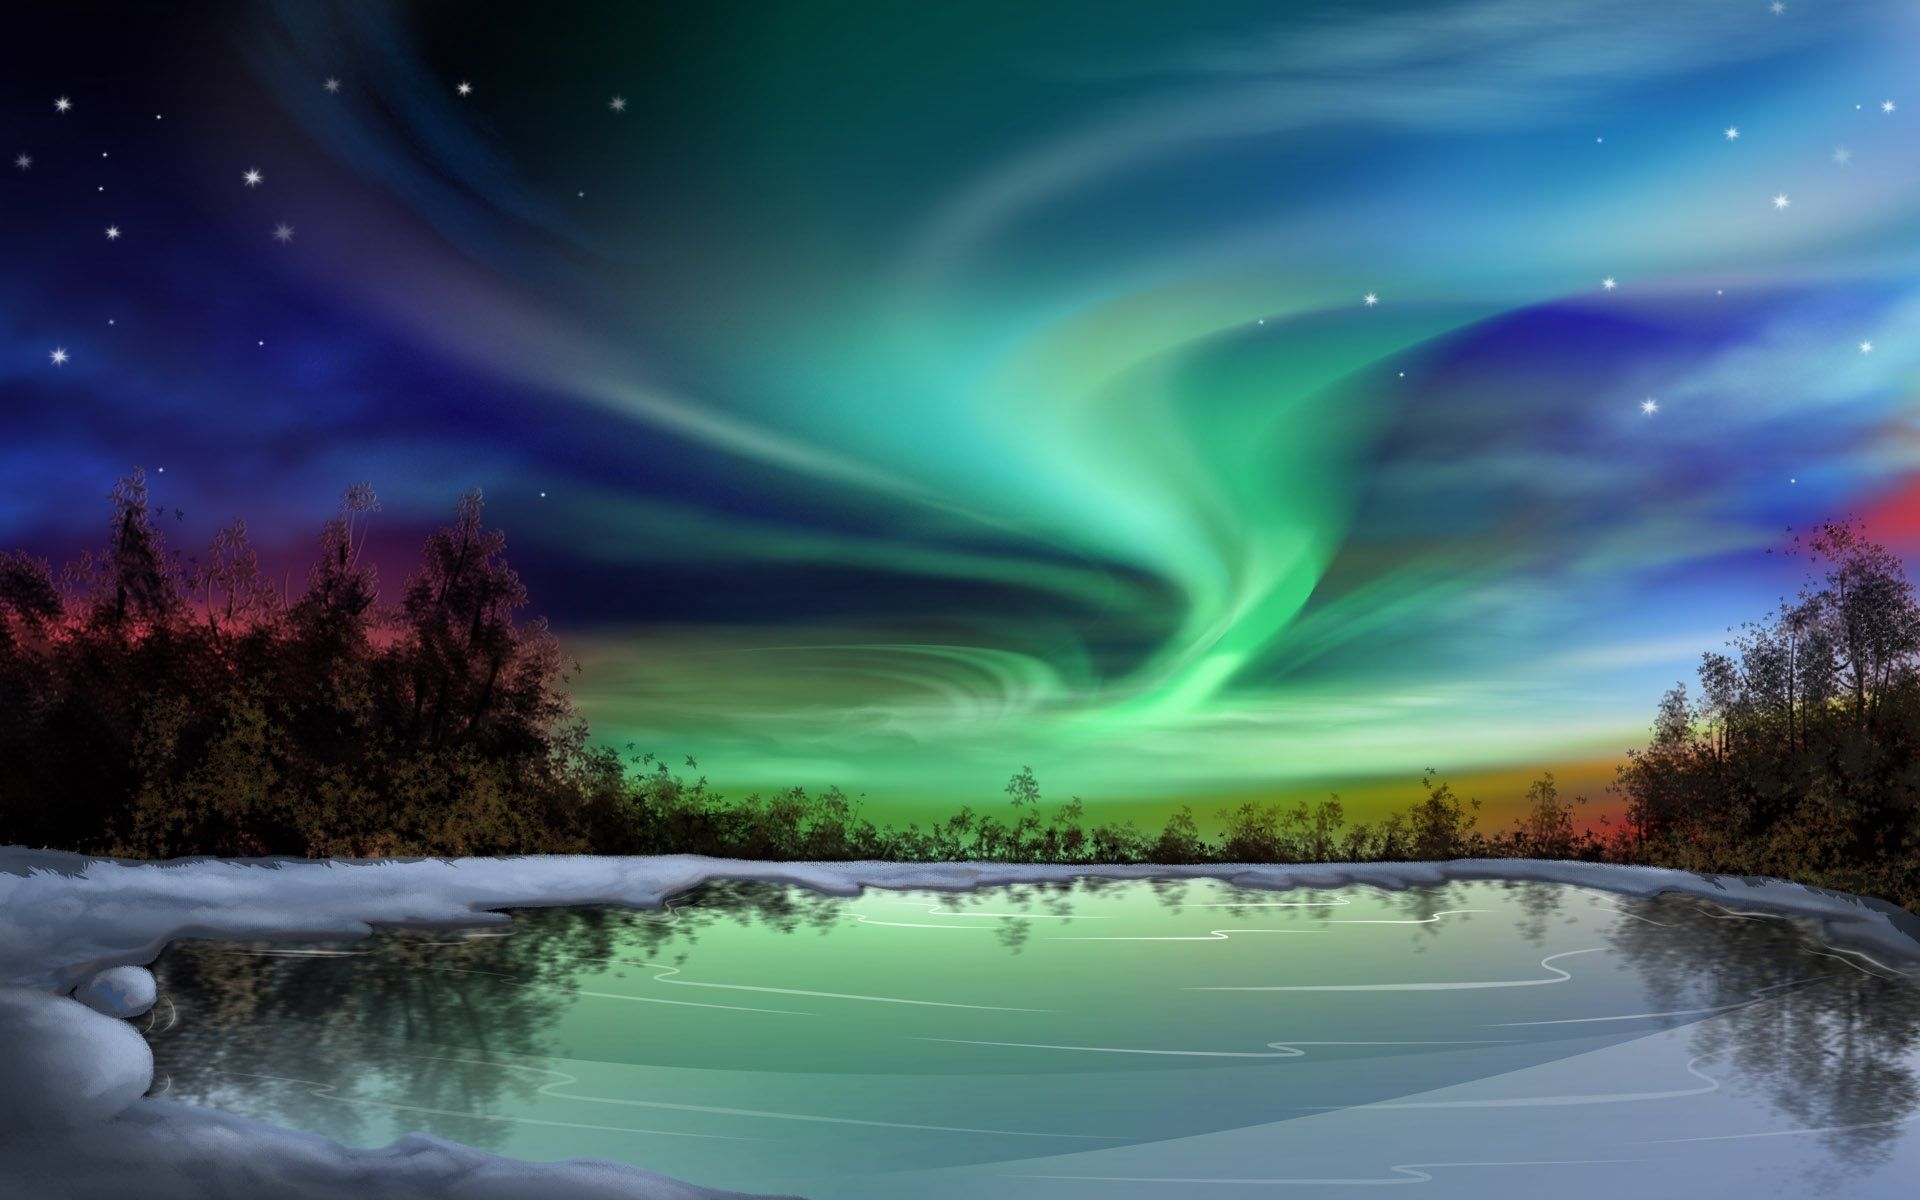 عکس استوک جادویی از آسمان شب به هنگام رویت شفق های قطبی